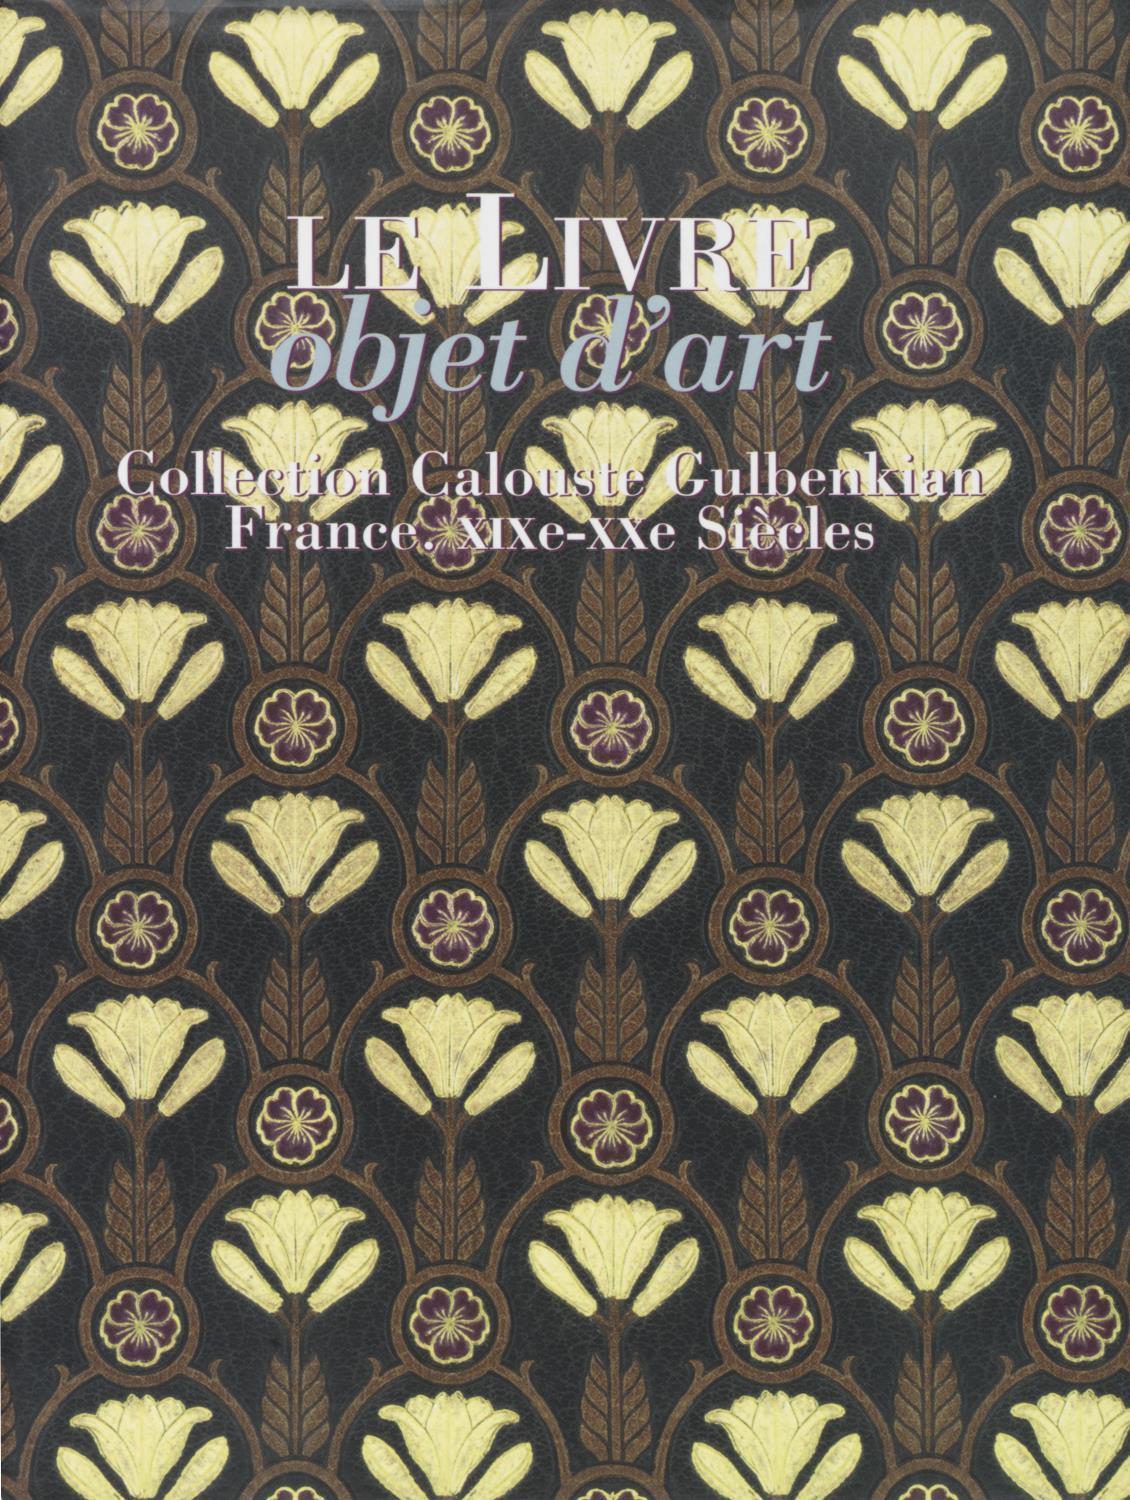 Le Livre: Objet d'Art. Collection Calouste Gulbenkian. France, XIXe-XXe Siècles